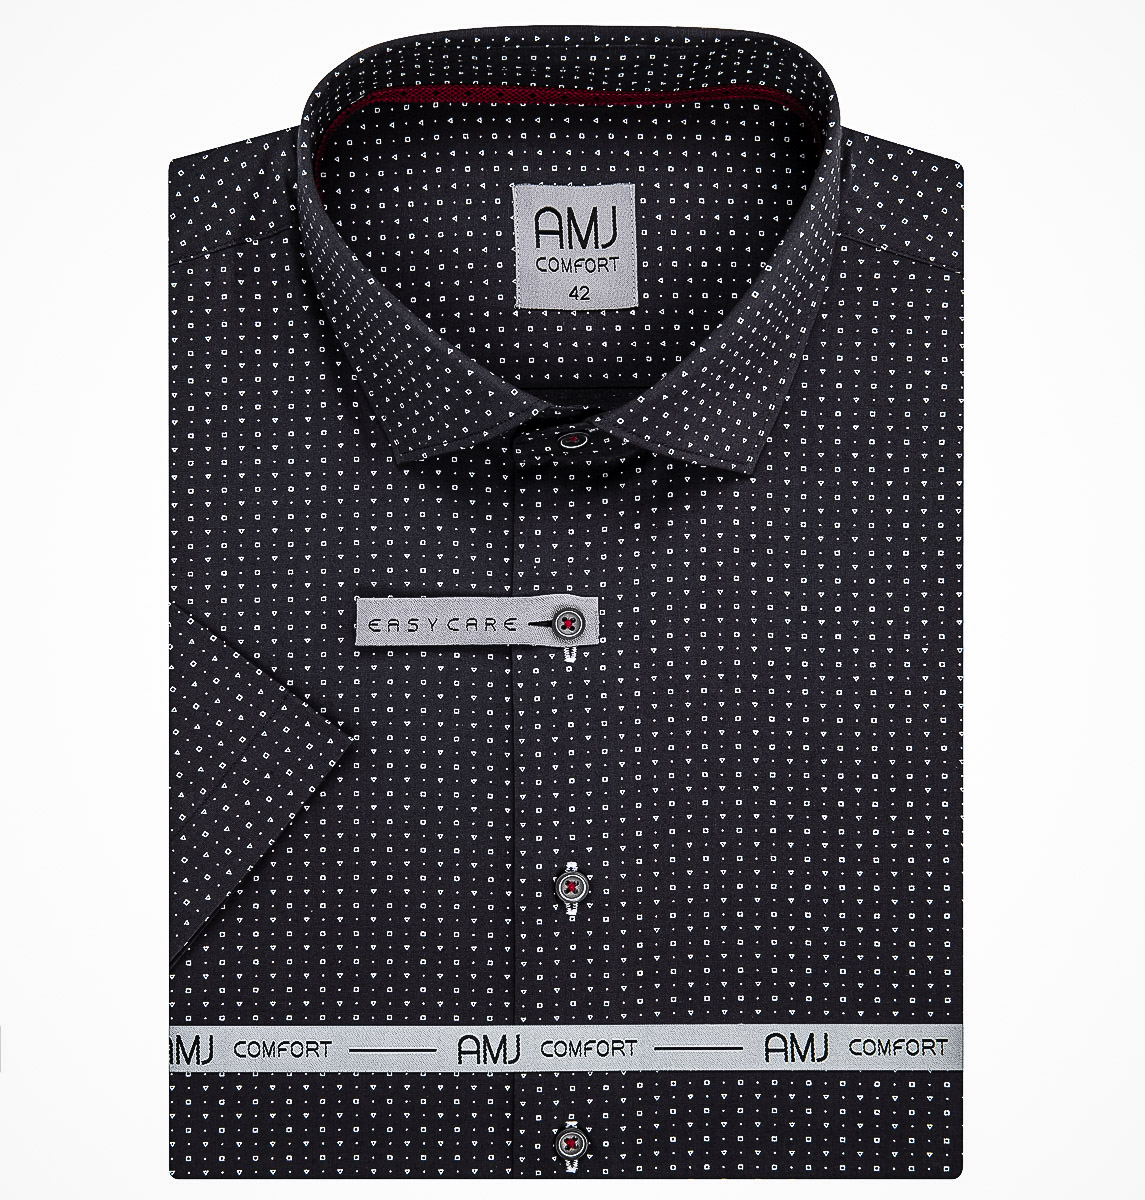 Pánská košile AMJ bavlněná, tmavě šedá s čtverečky a trojúhelníky VKBR1211, krátký rukáv (regular + slim fit)